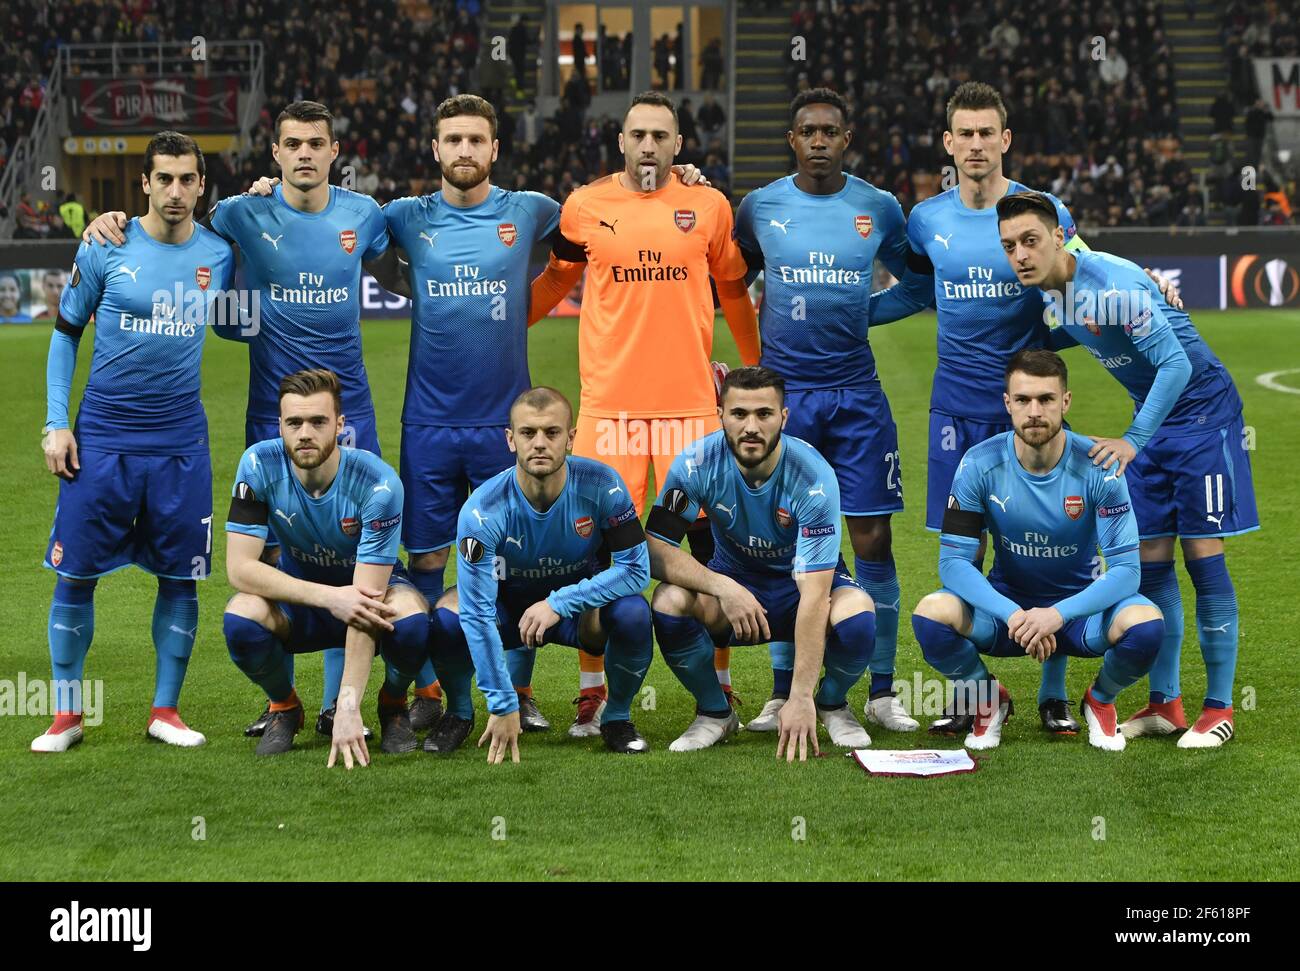 Foto del equipo de fútbol del Arsenal en el estadio de San Siro, en Milán, Italia. Foto de stock